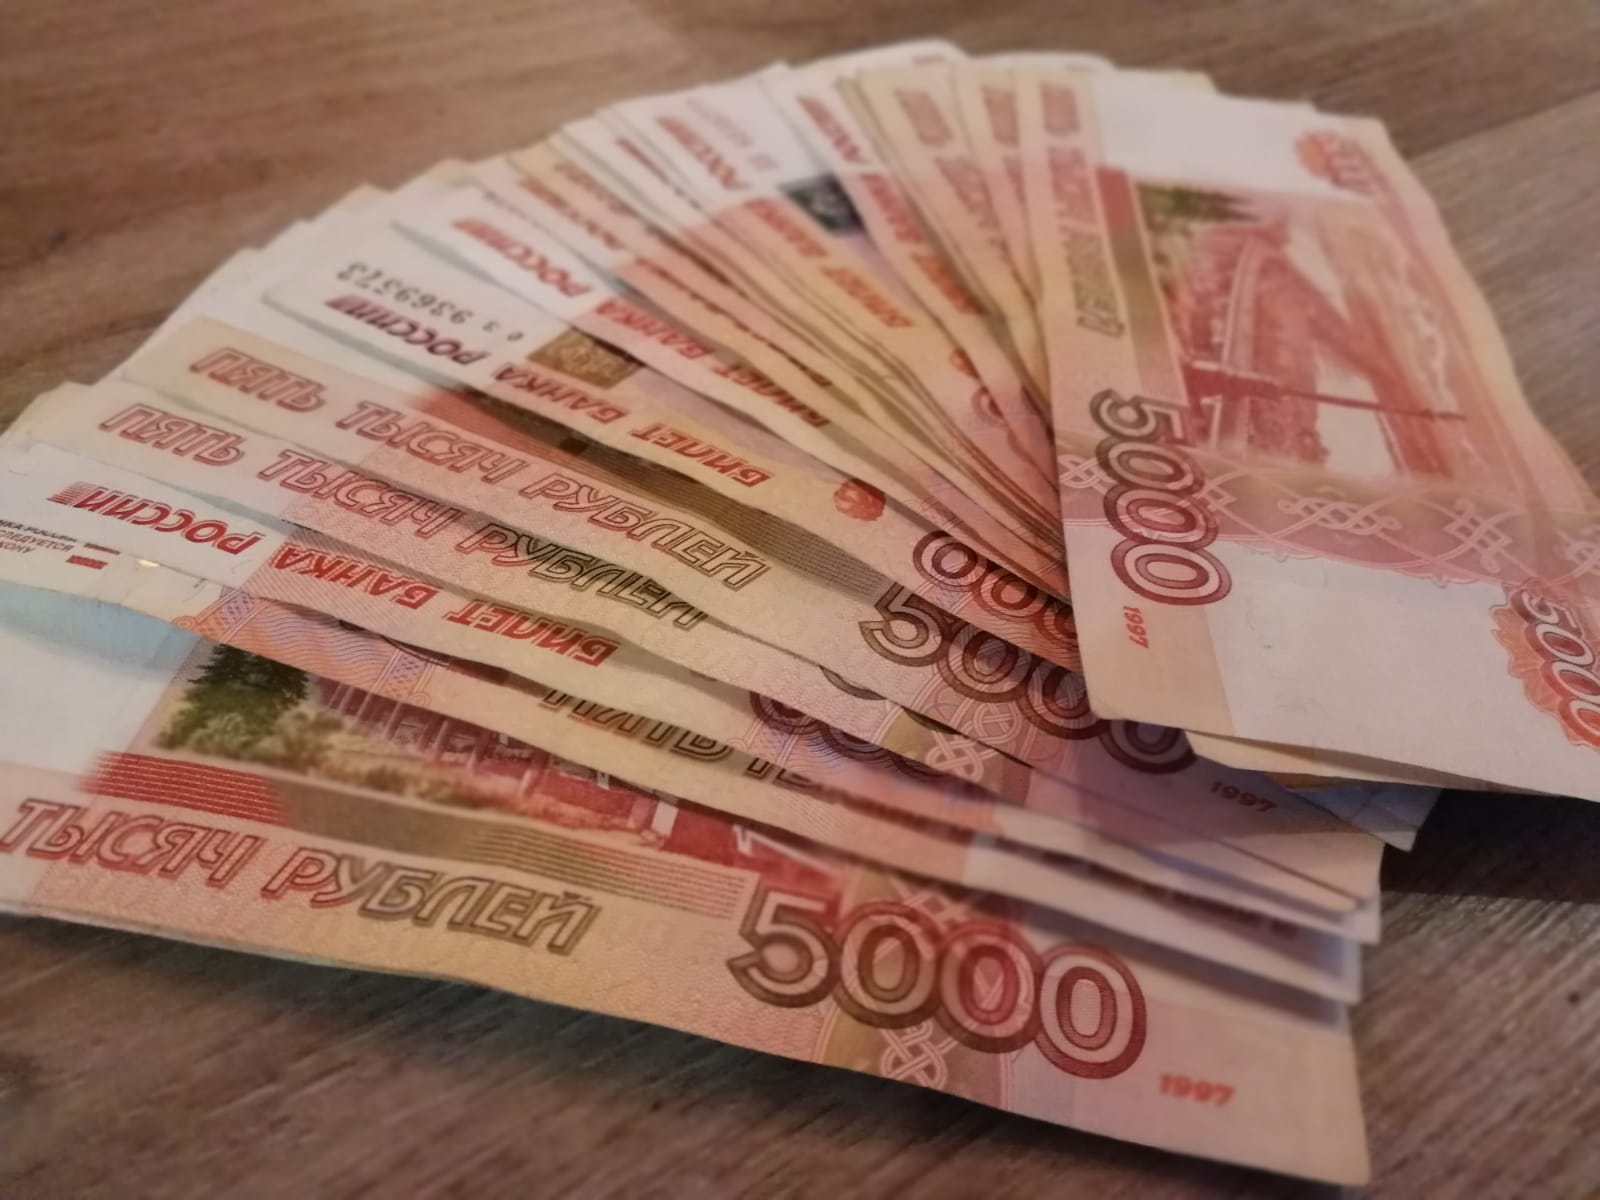 Почти 1,7 миллиона рублей потерял житель Биробиджана, доверившись сотрудникам Госуслуг и банка